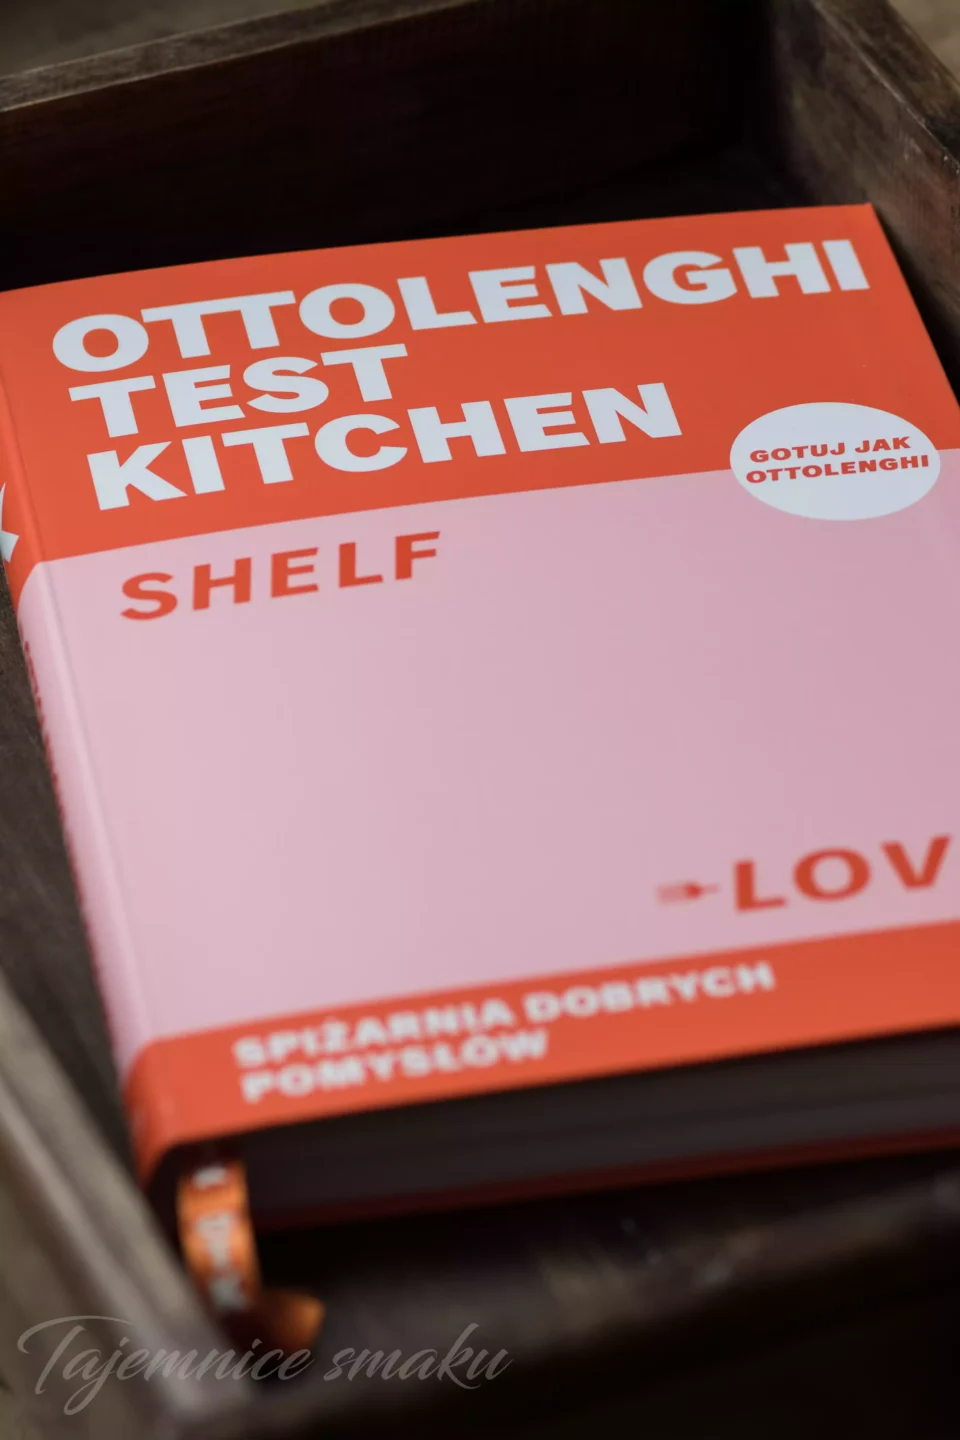 Gotuj jak Ottolenghi - "Ottolenghi Test Kitchen: Shelf Love. Spiżarnia dobrych pomysłów"